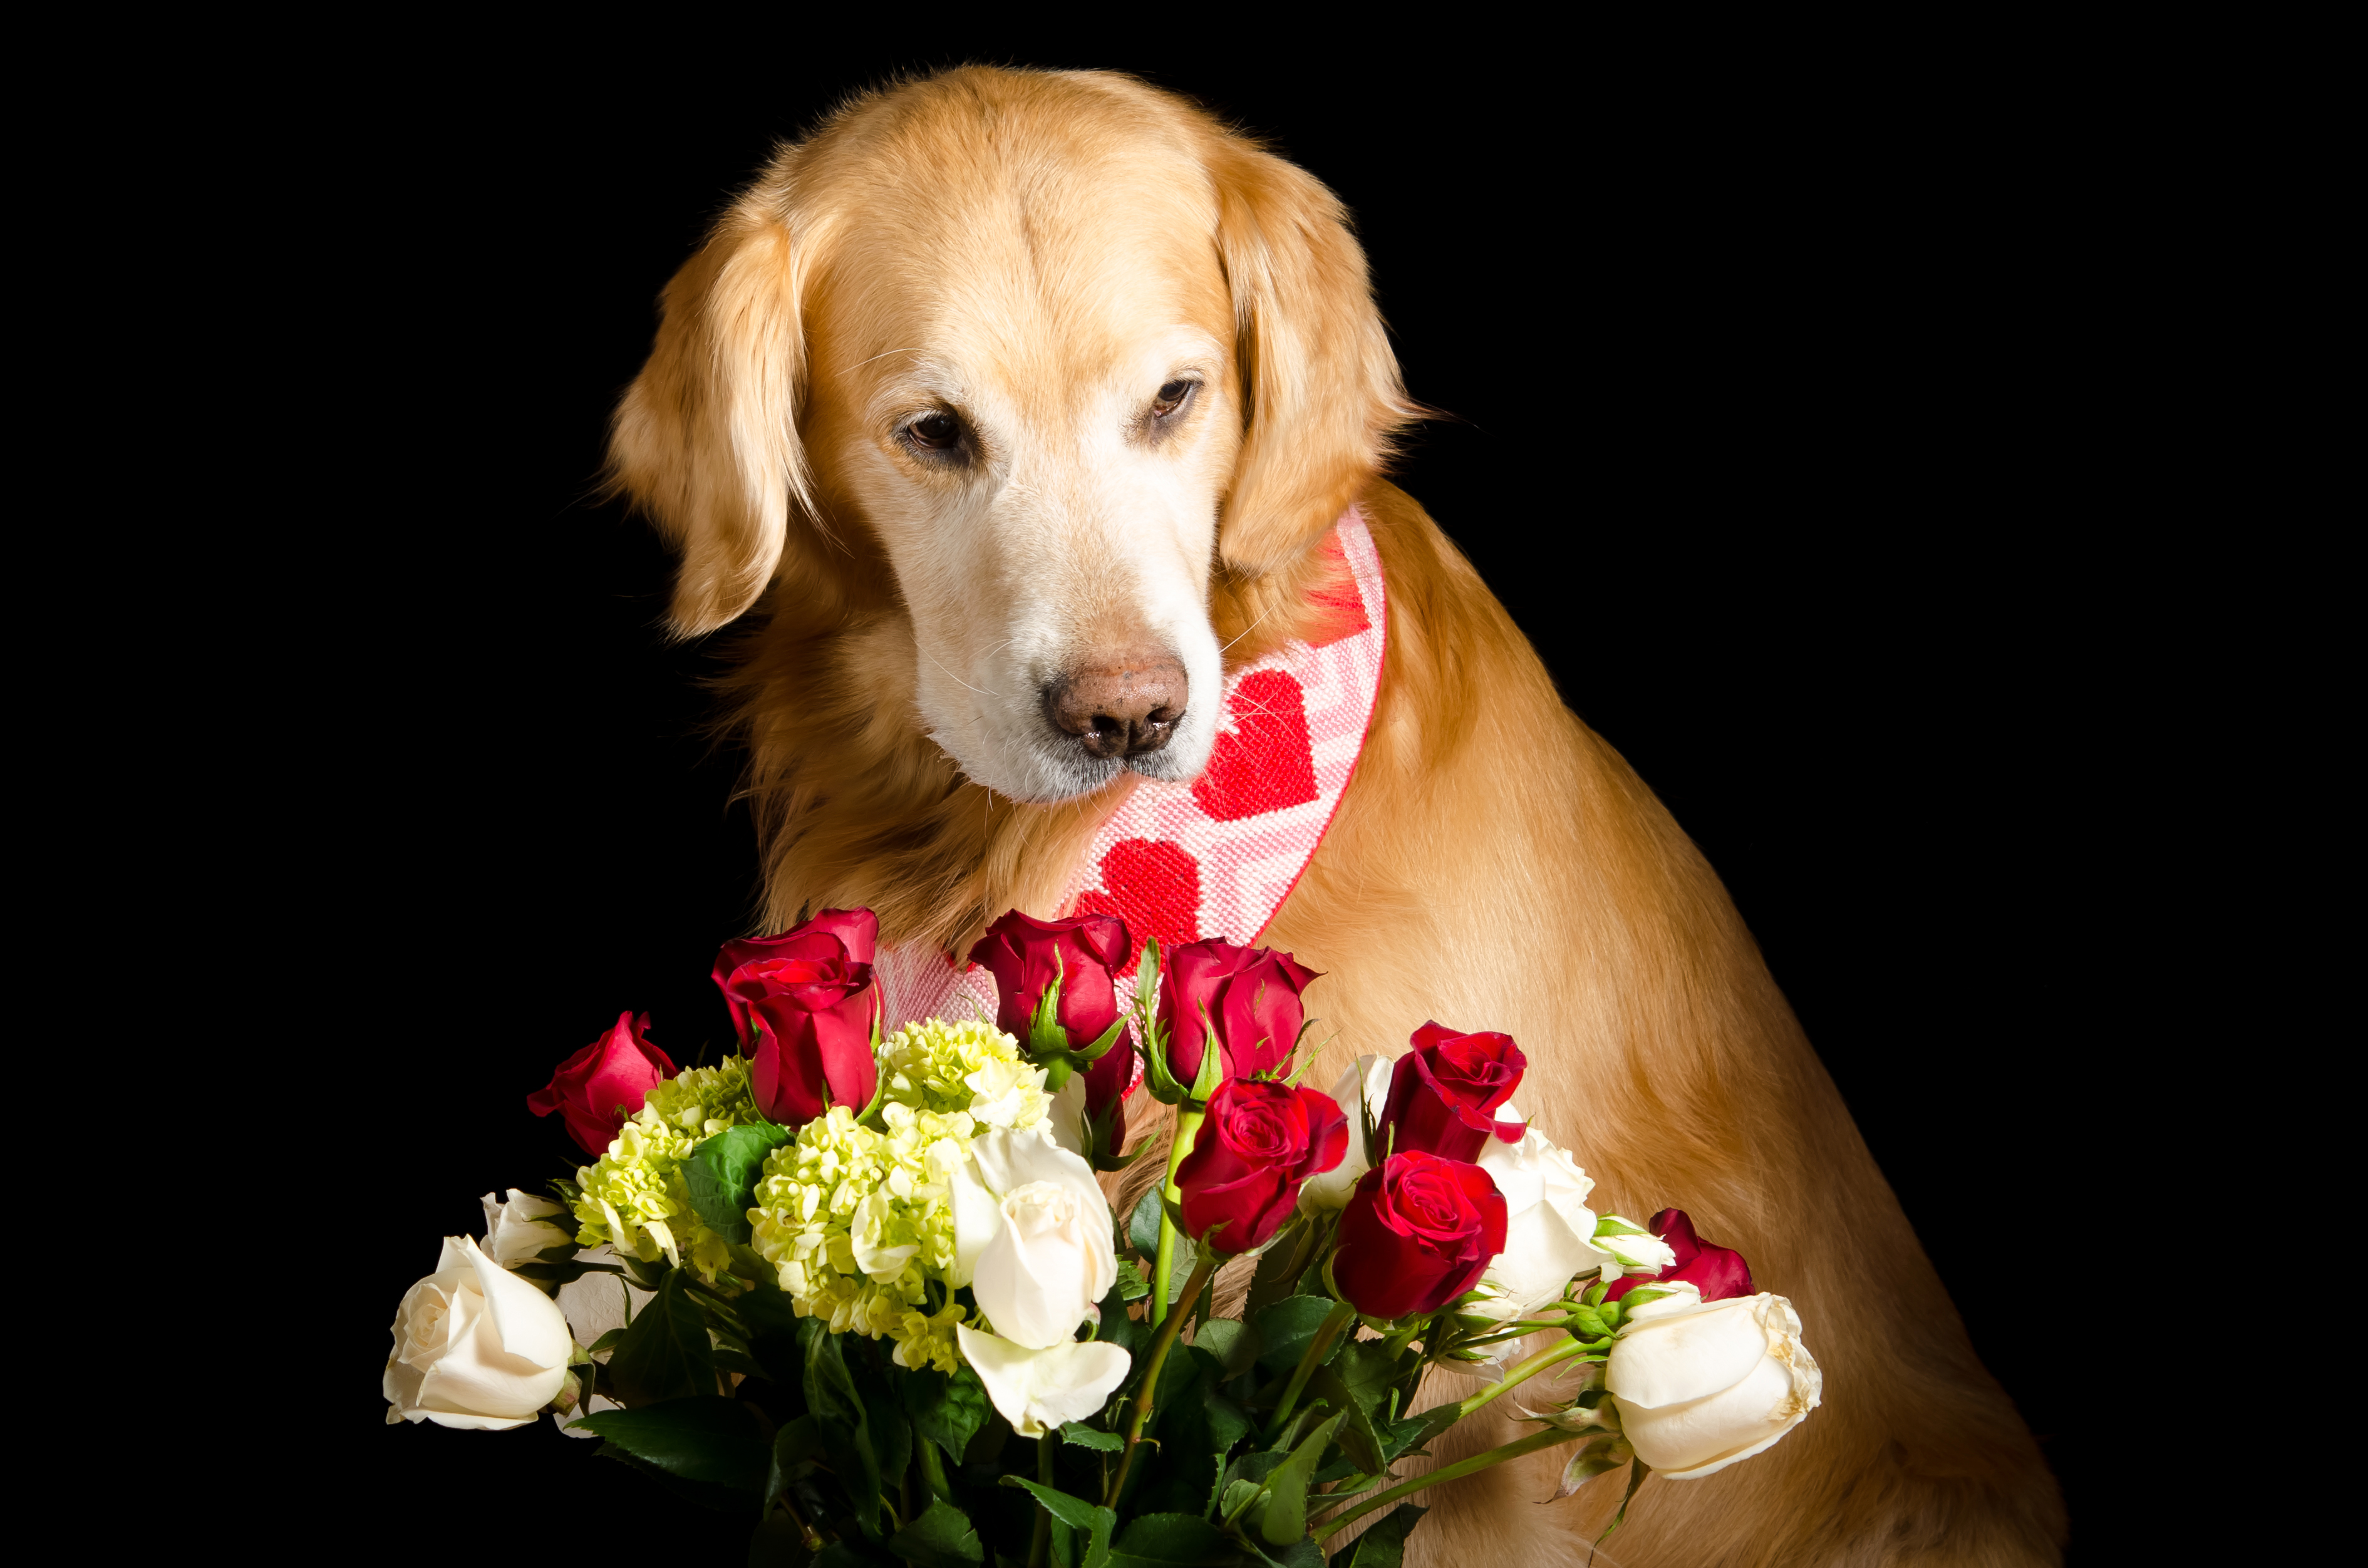 Dog Flower Golden Retriever Pet Rose 3781x2504